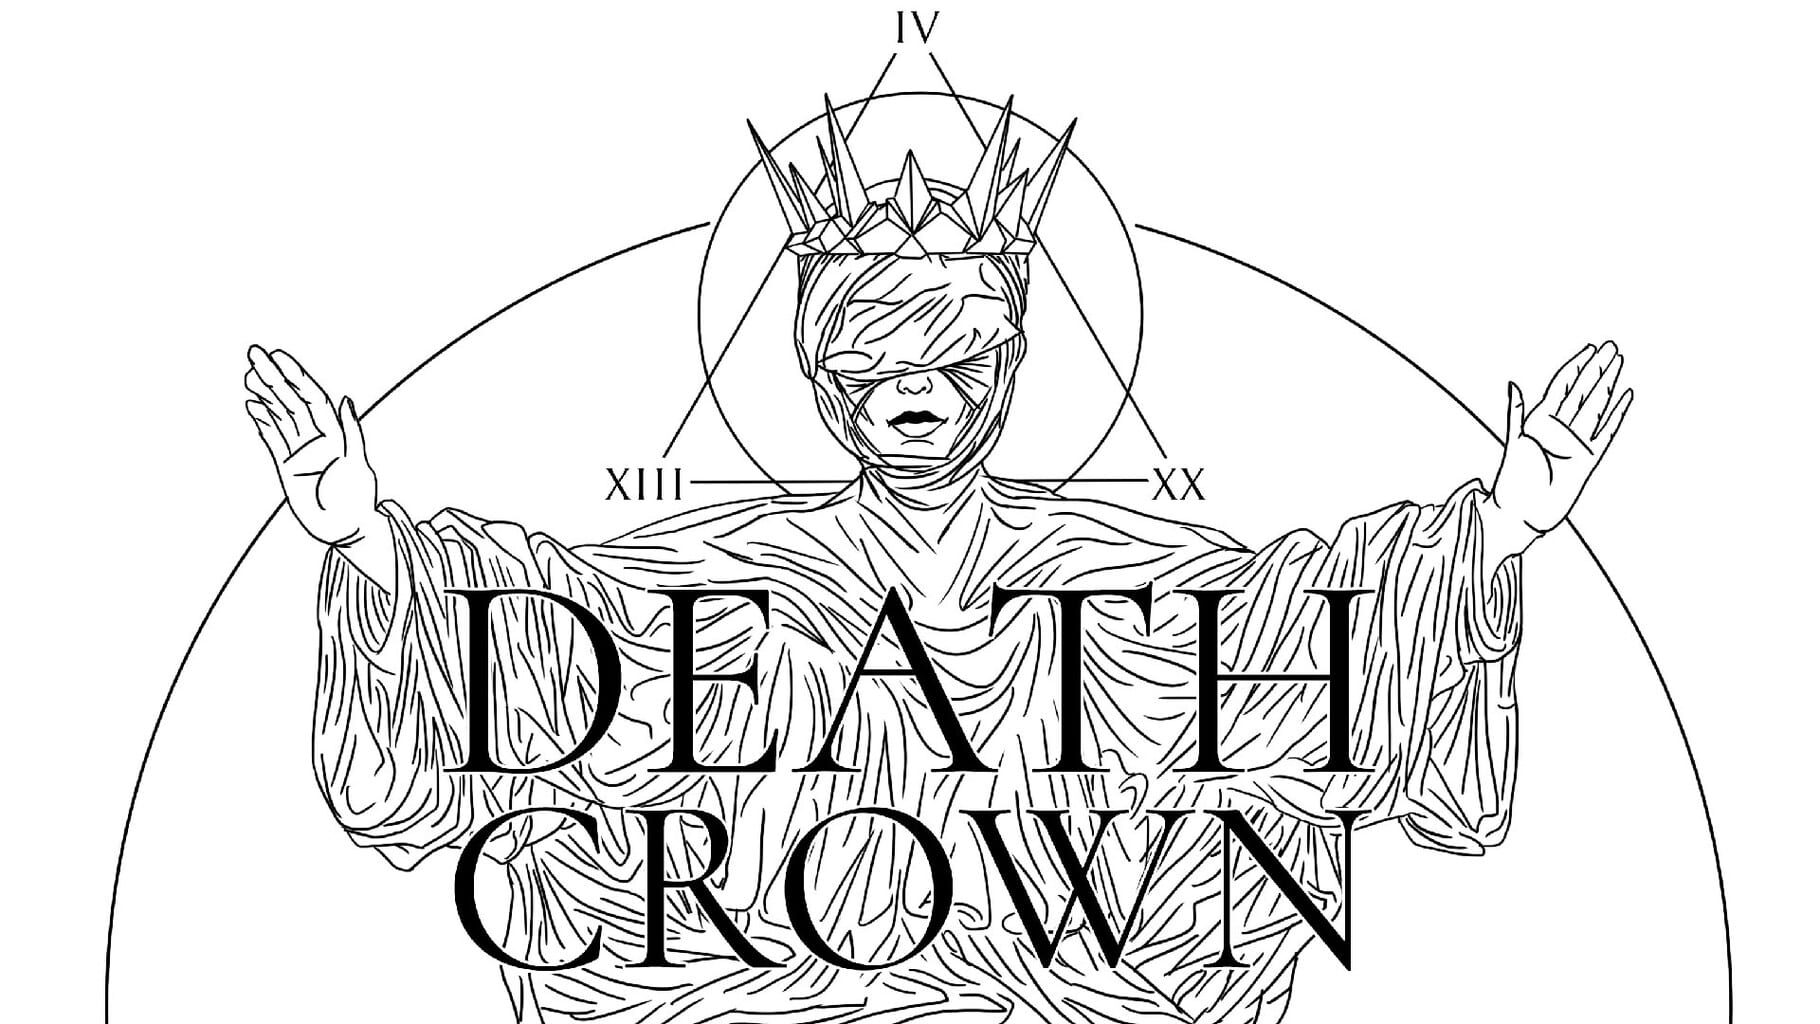 Death Crown artwork